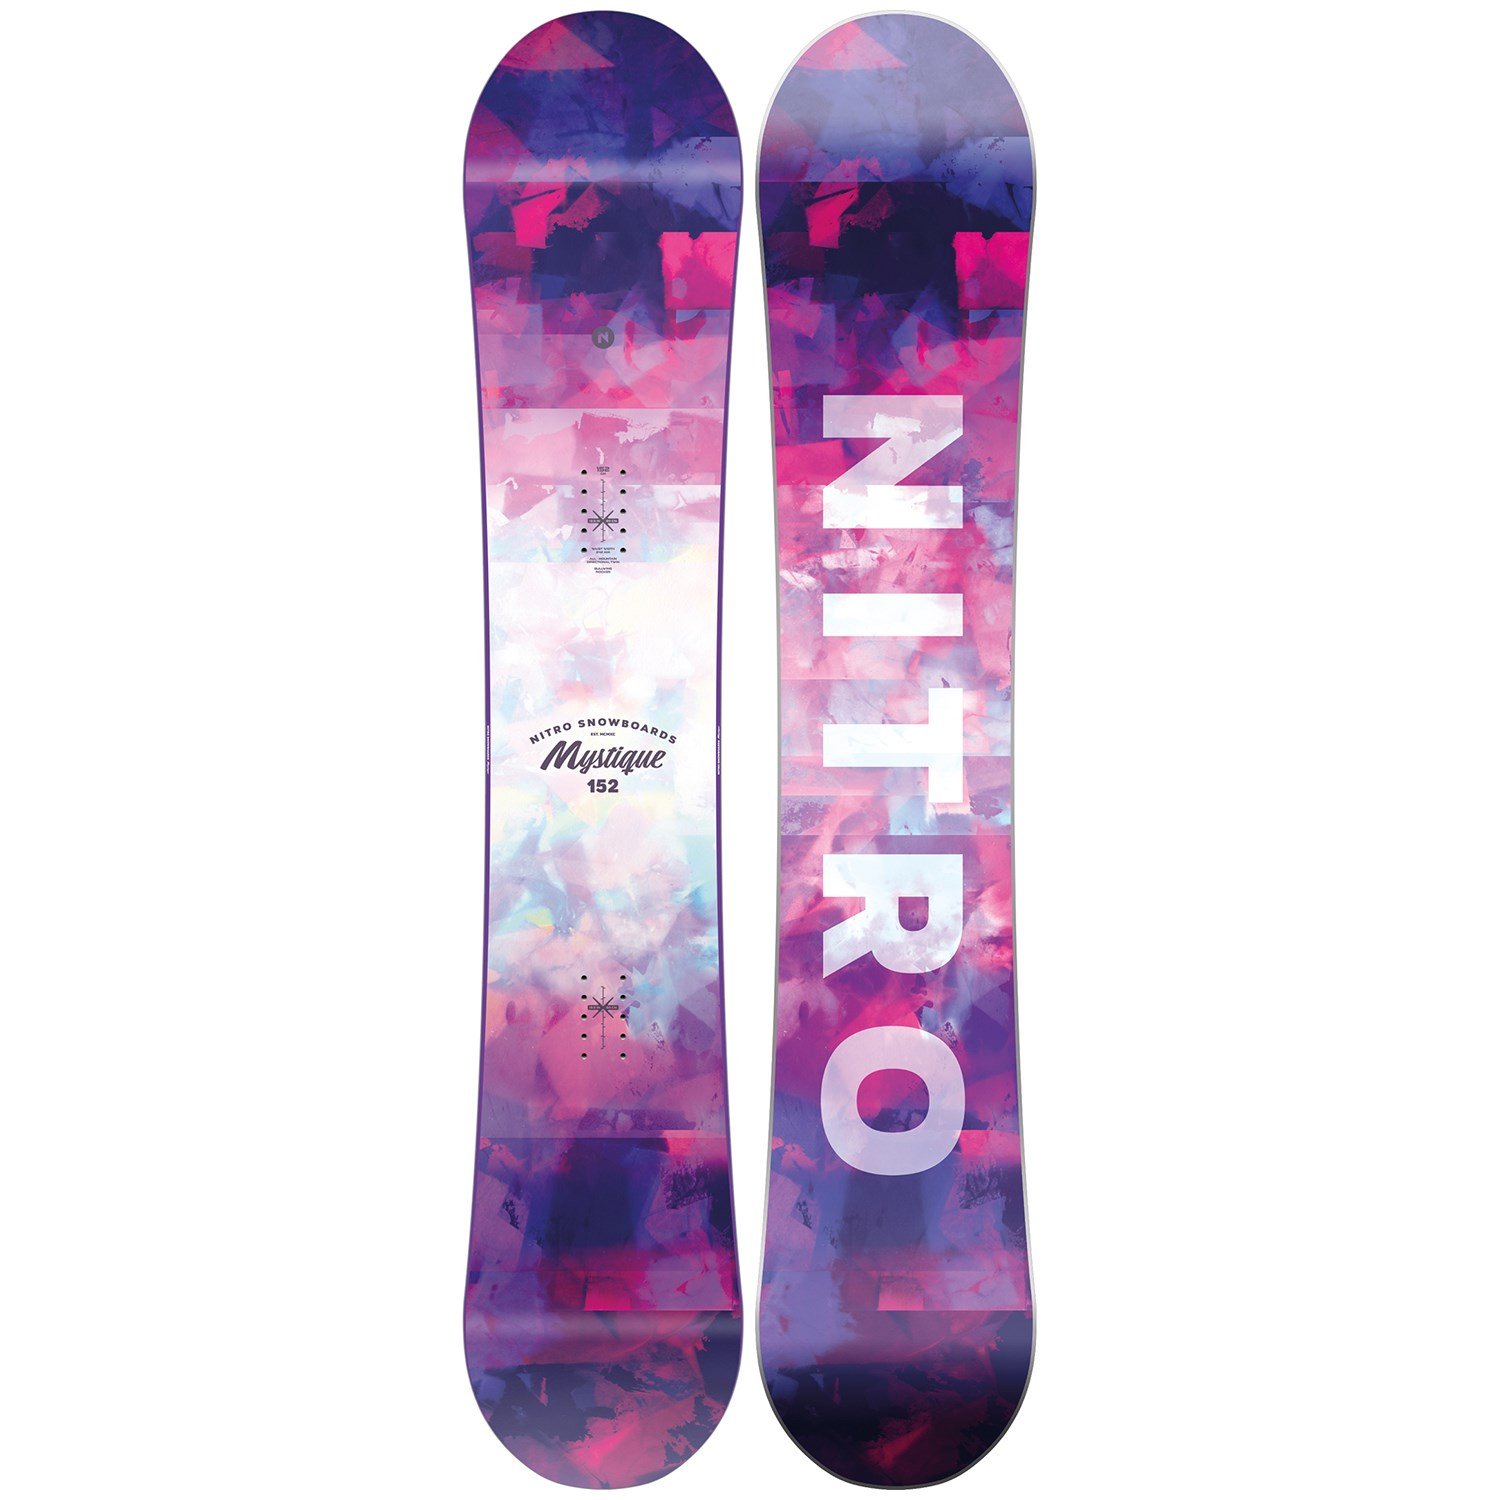 Speciaal Vermaken pak Nitro Mystique Snowboard - Women's 2021 | evo